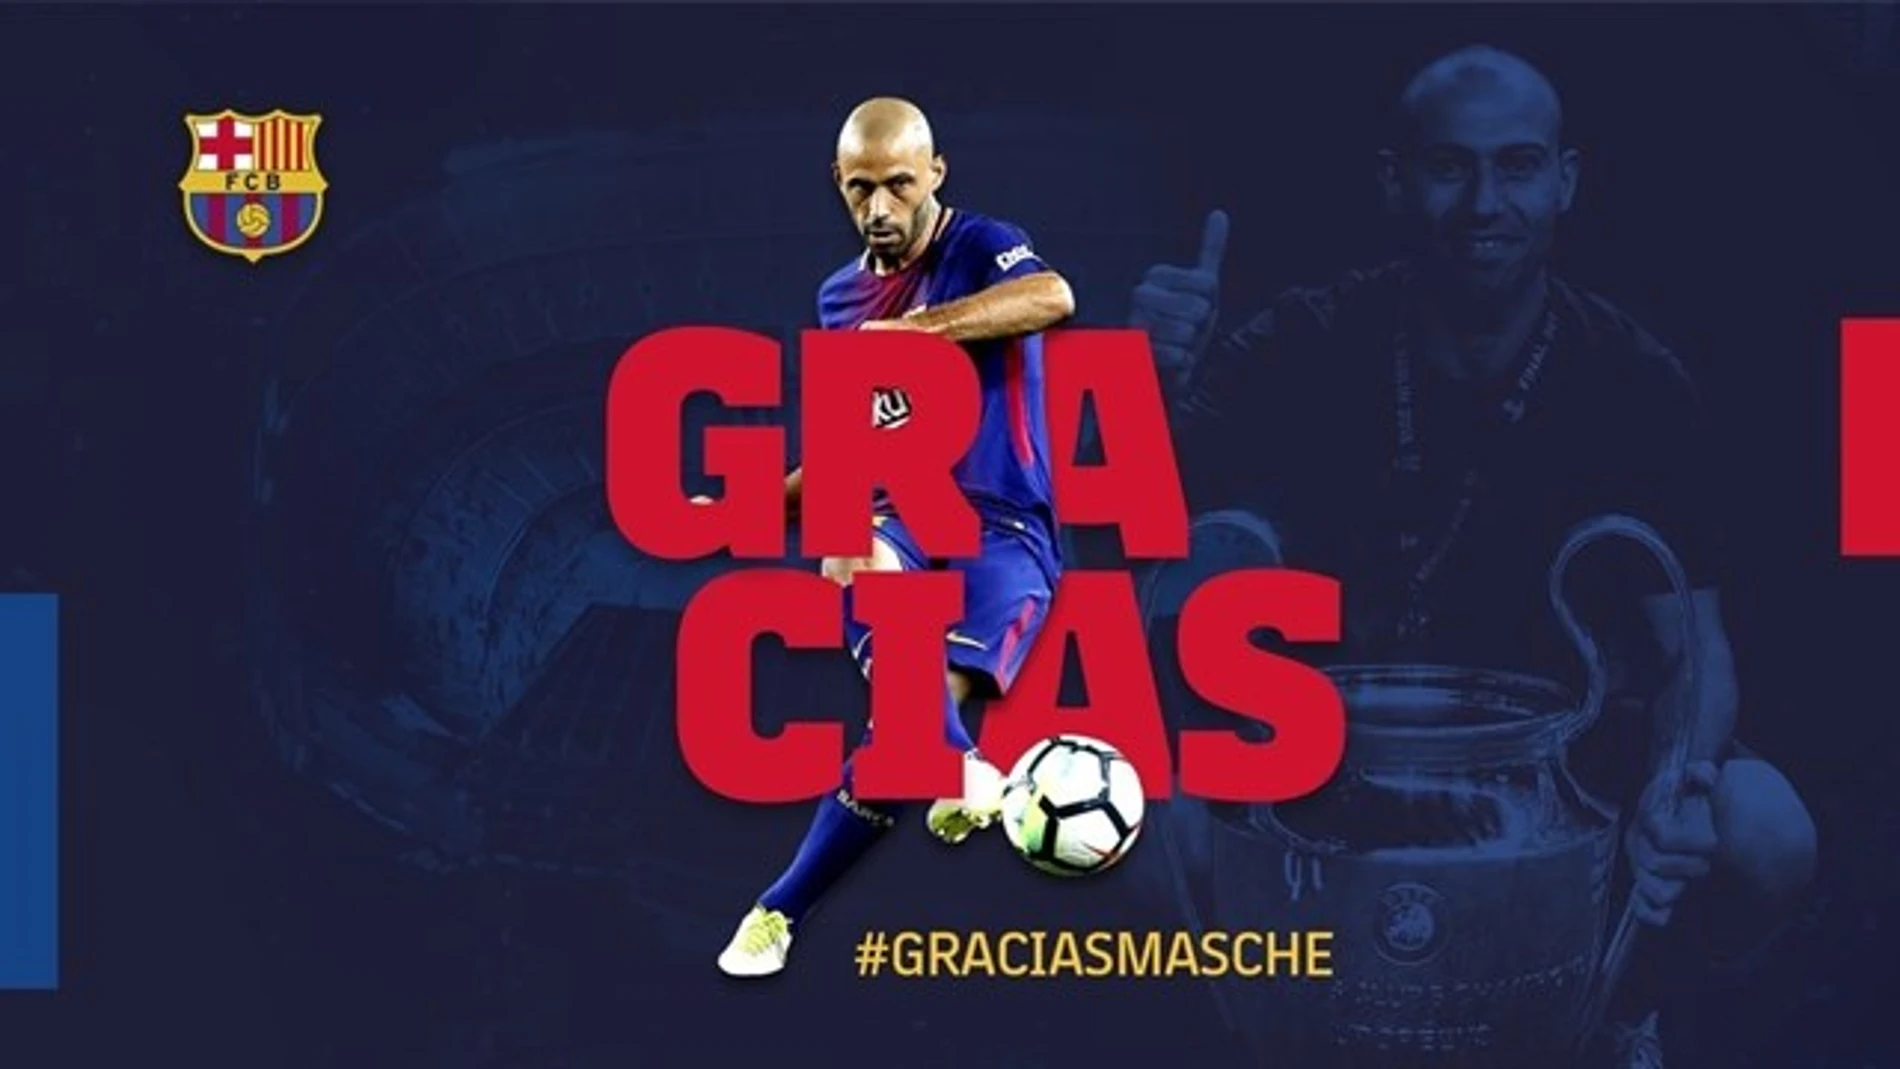 El FC Barcelona anunció de manera oficial la despedida de Mascherano, quien pone rumbo a China